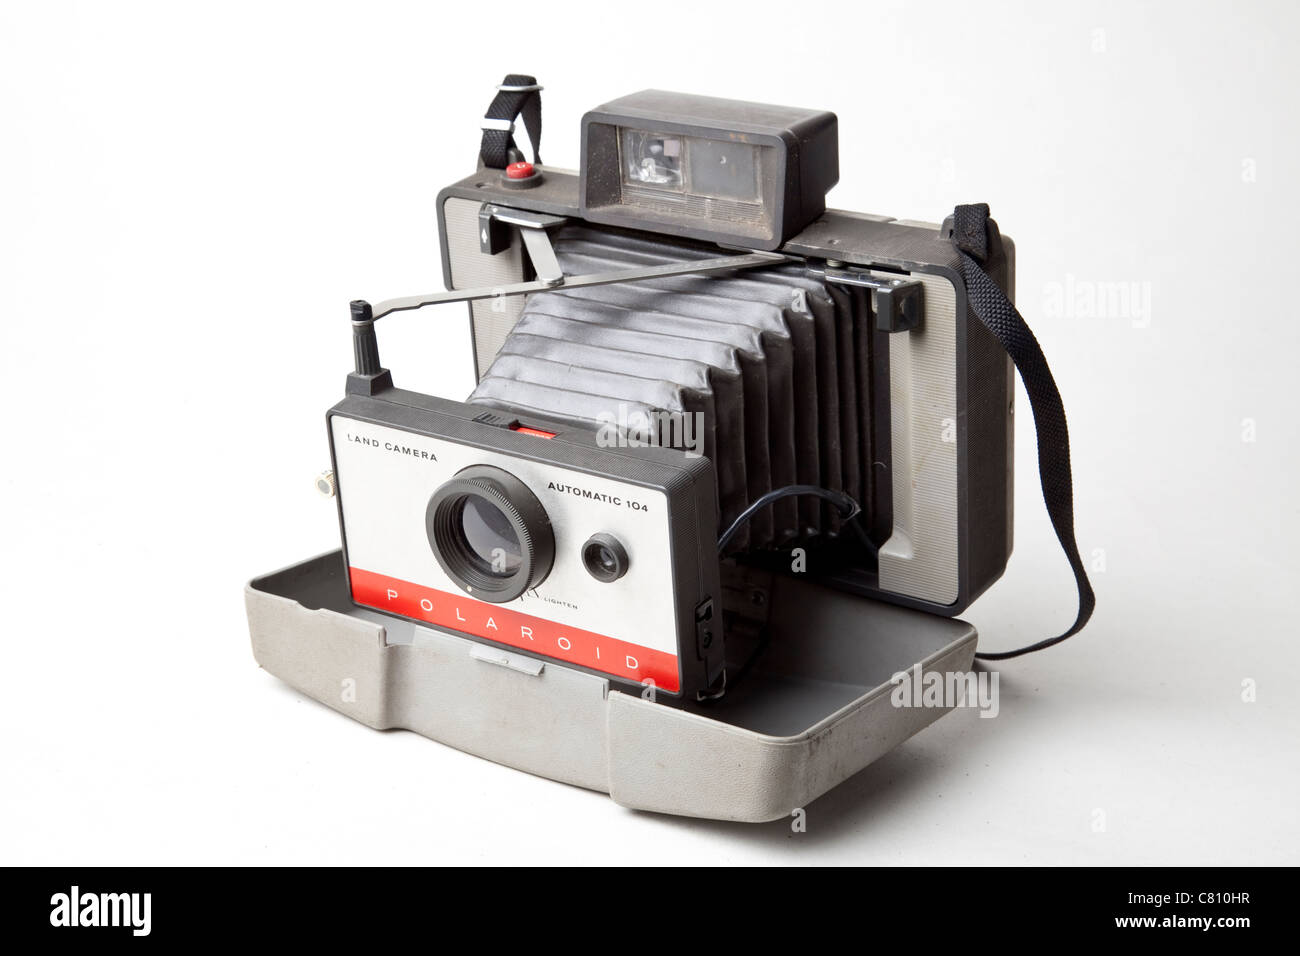 Polaroid instant camera Stock Photo